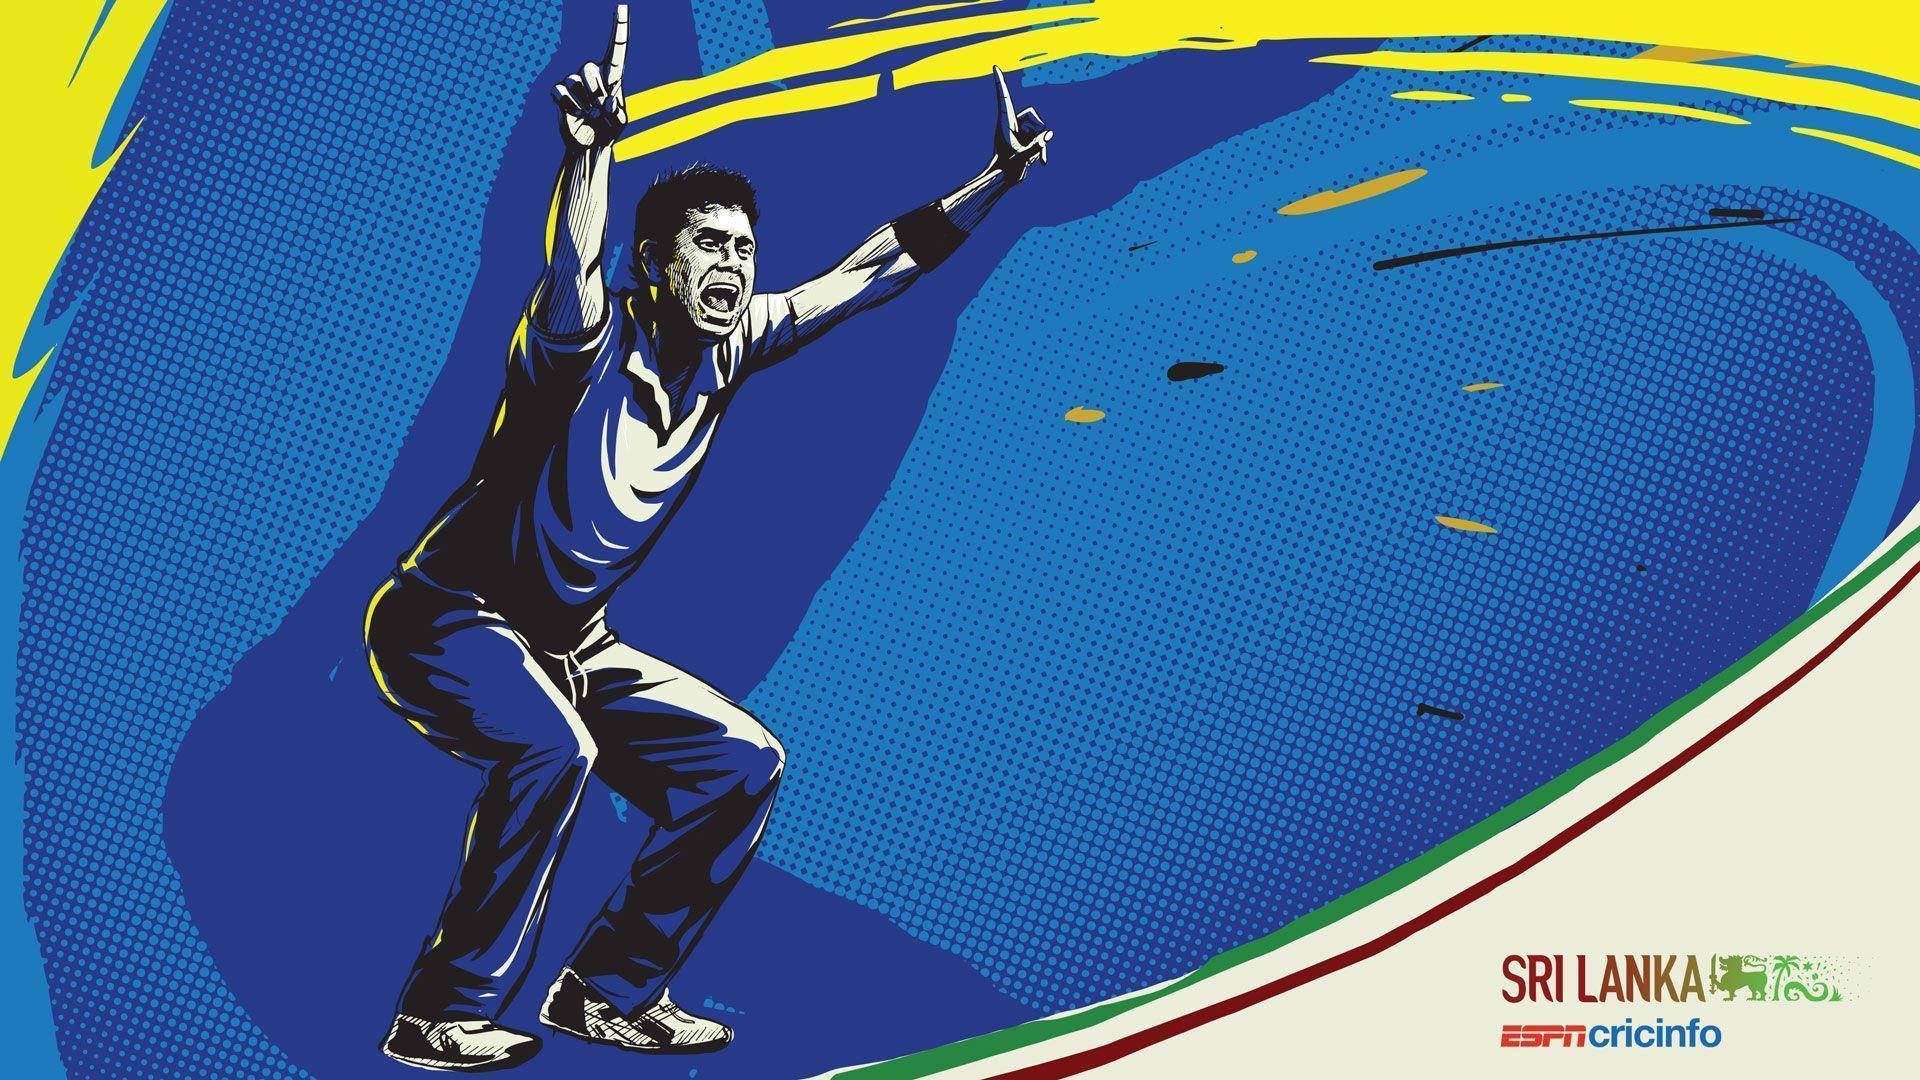 Sri Lanka Cricket Poster Wallpaper